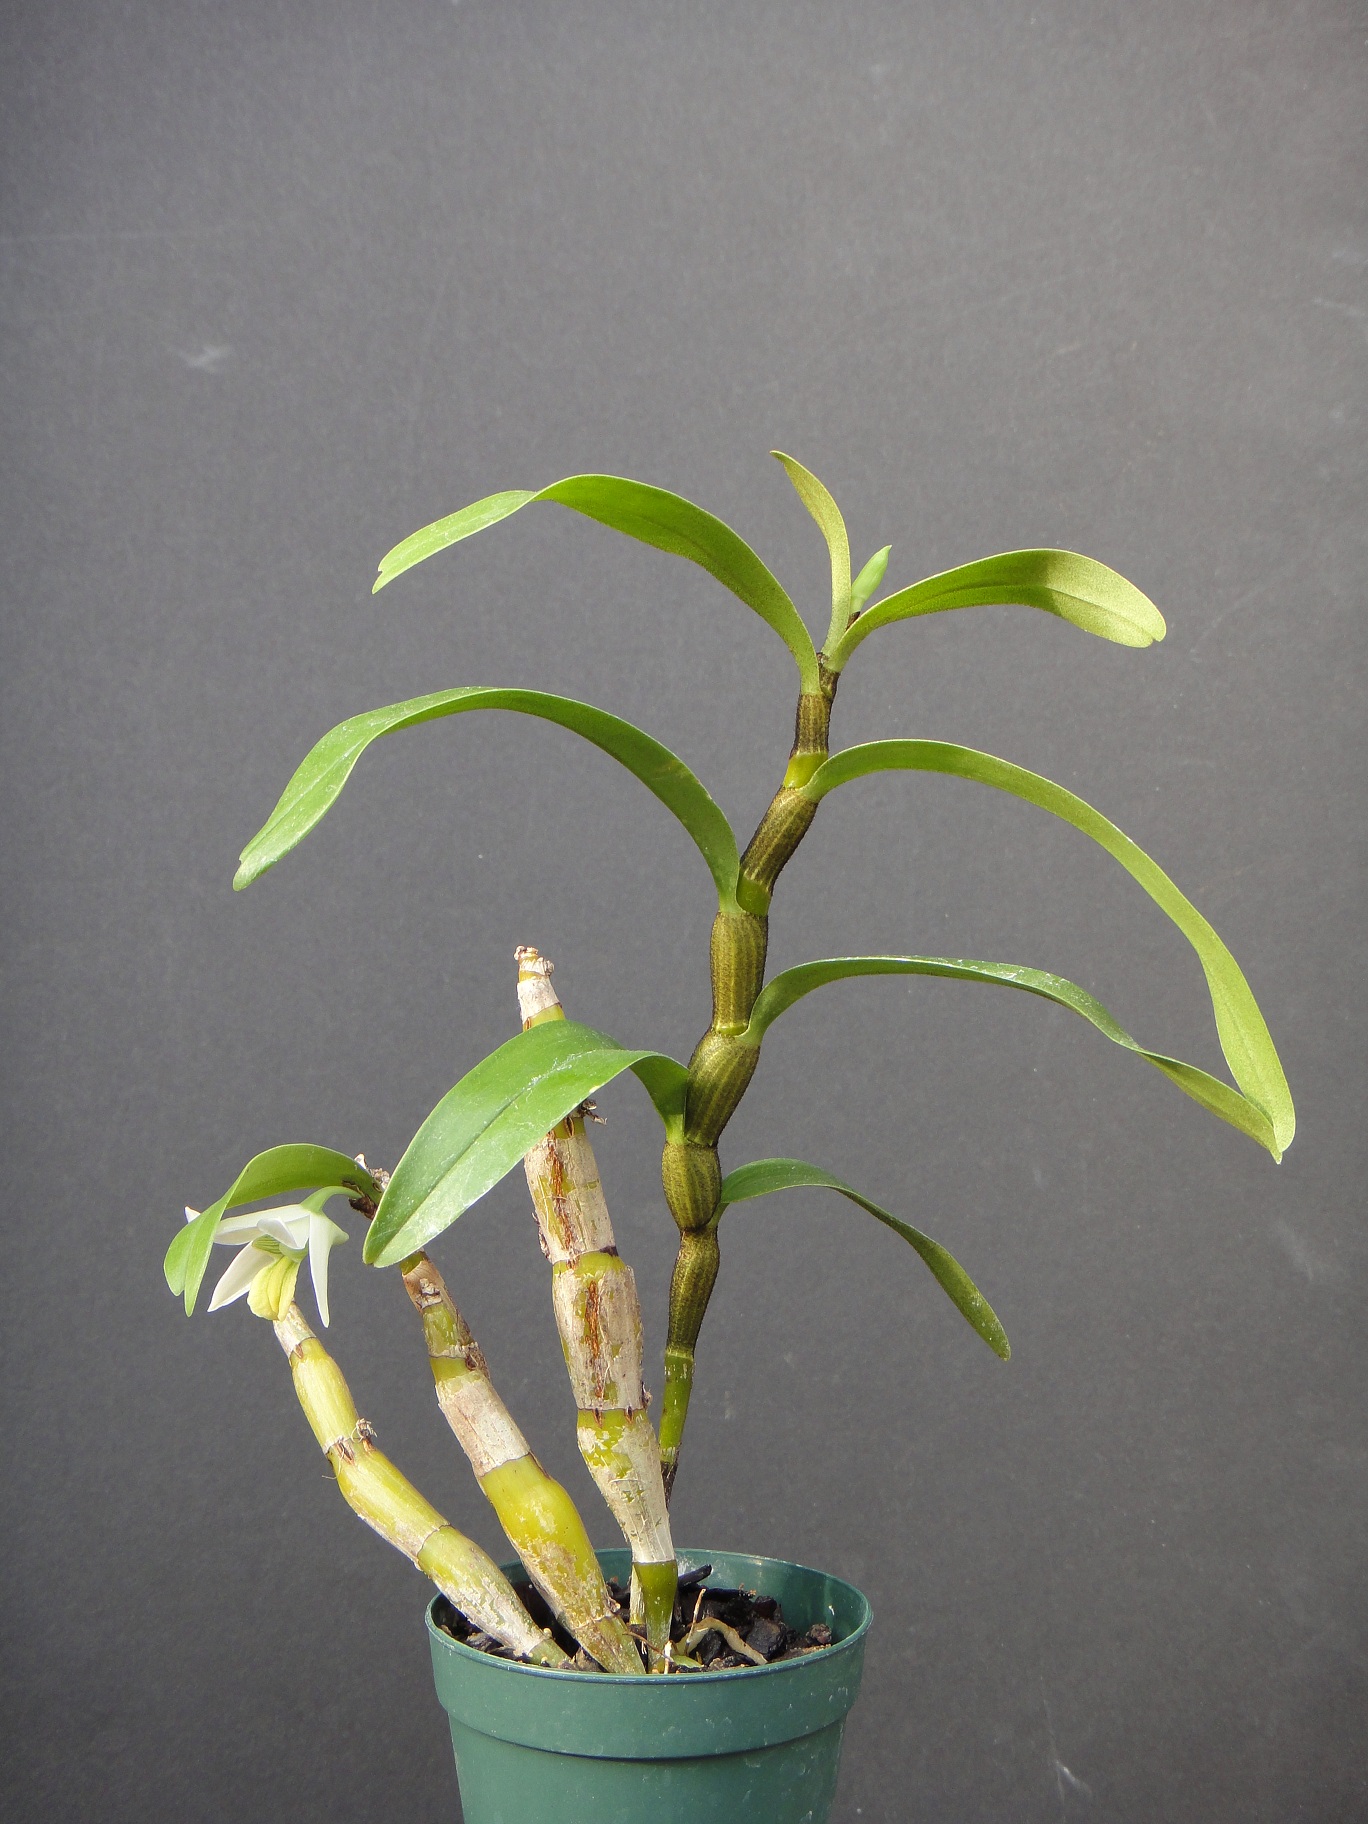 http://orchids.la.coocan.jp/Dendrobium/Dendrobium%20scabrilingue/DSC02354.JPG